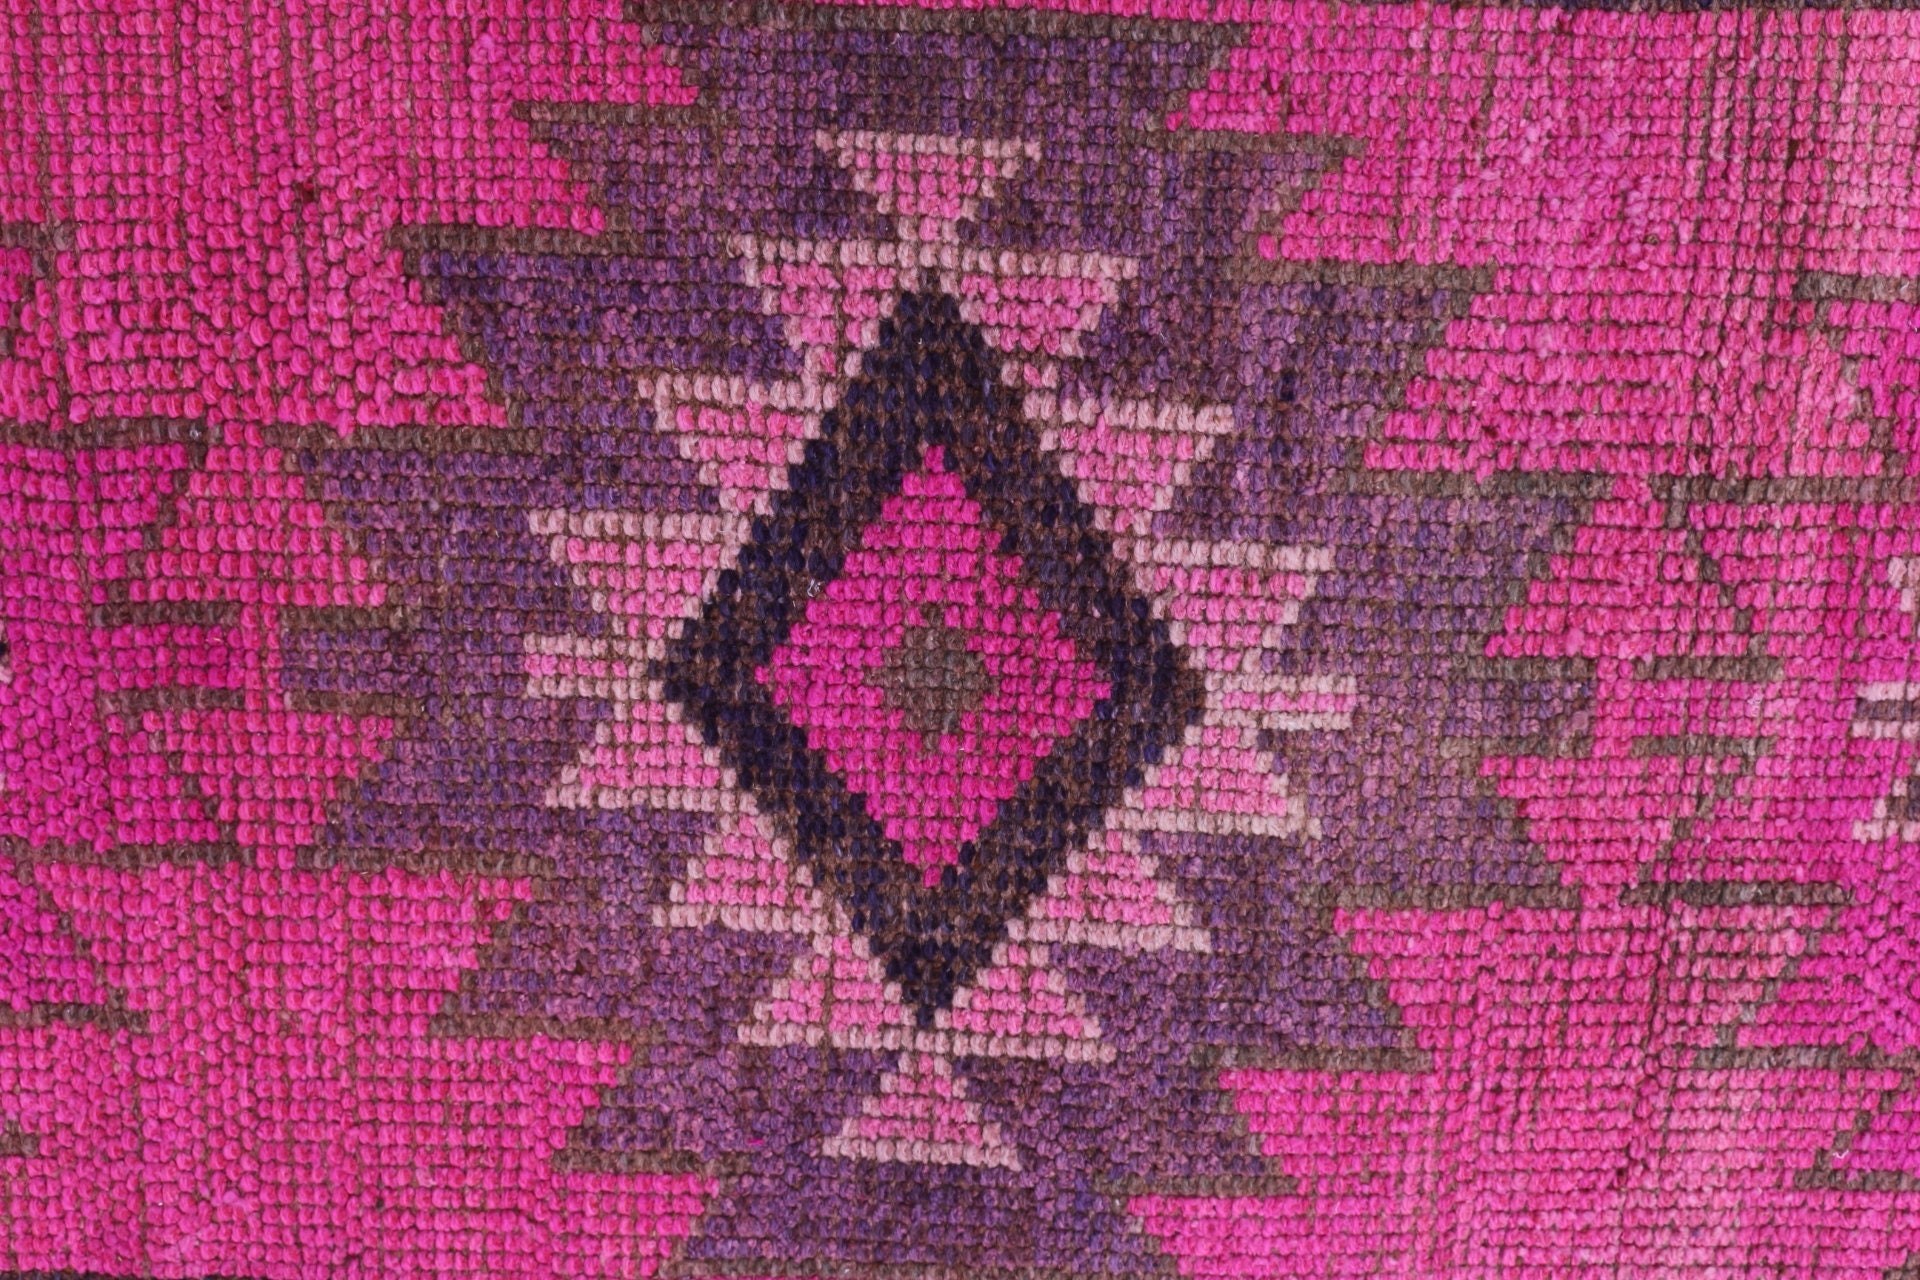 Hallway Rug, Rugs for Runner, Turkish Rug, Vintage Rugs, Decorative Rug, Pink Oriental Rug, Cool Rug, 2.6x9.8 ft Runner Rugs